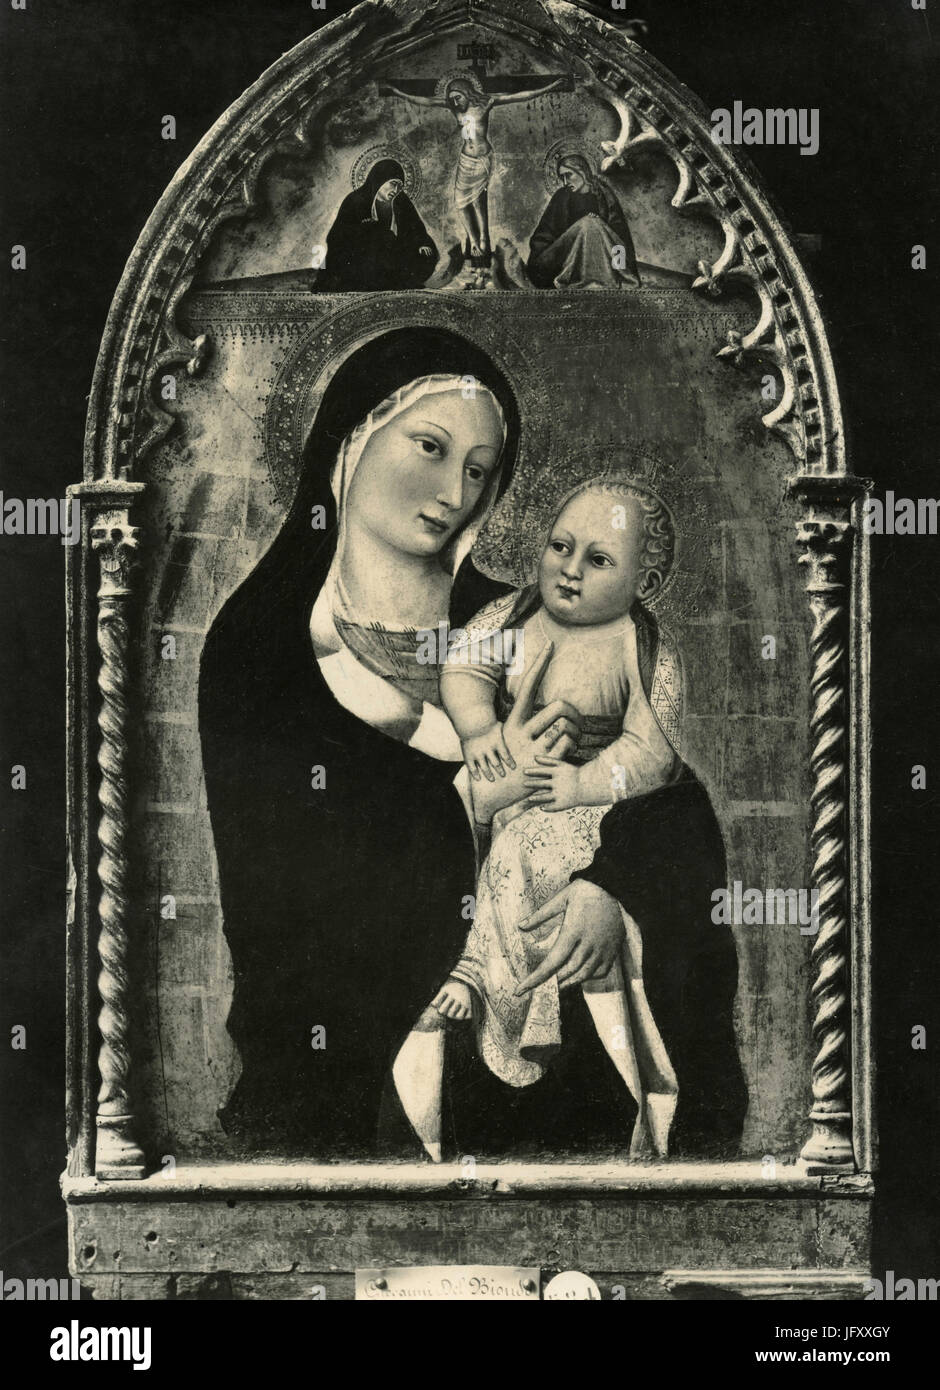 La Vierge et l'enfant avec la crucifixion, Giovanni del Biondo, Sienne, Italie Banque D'Images